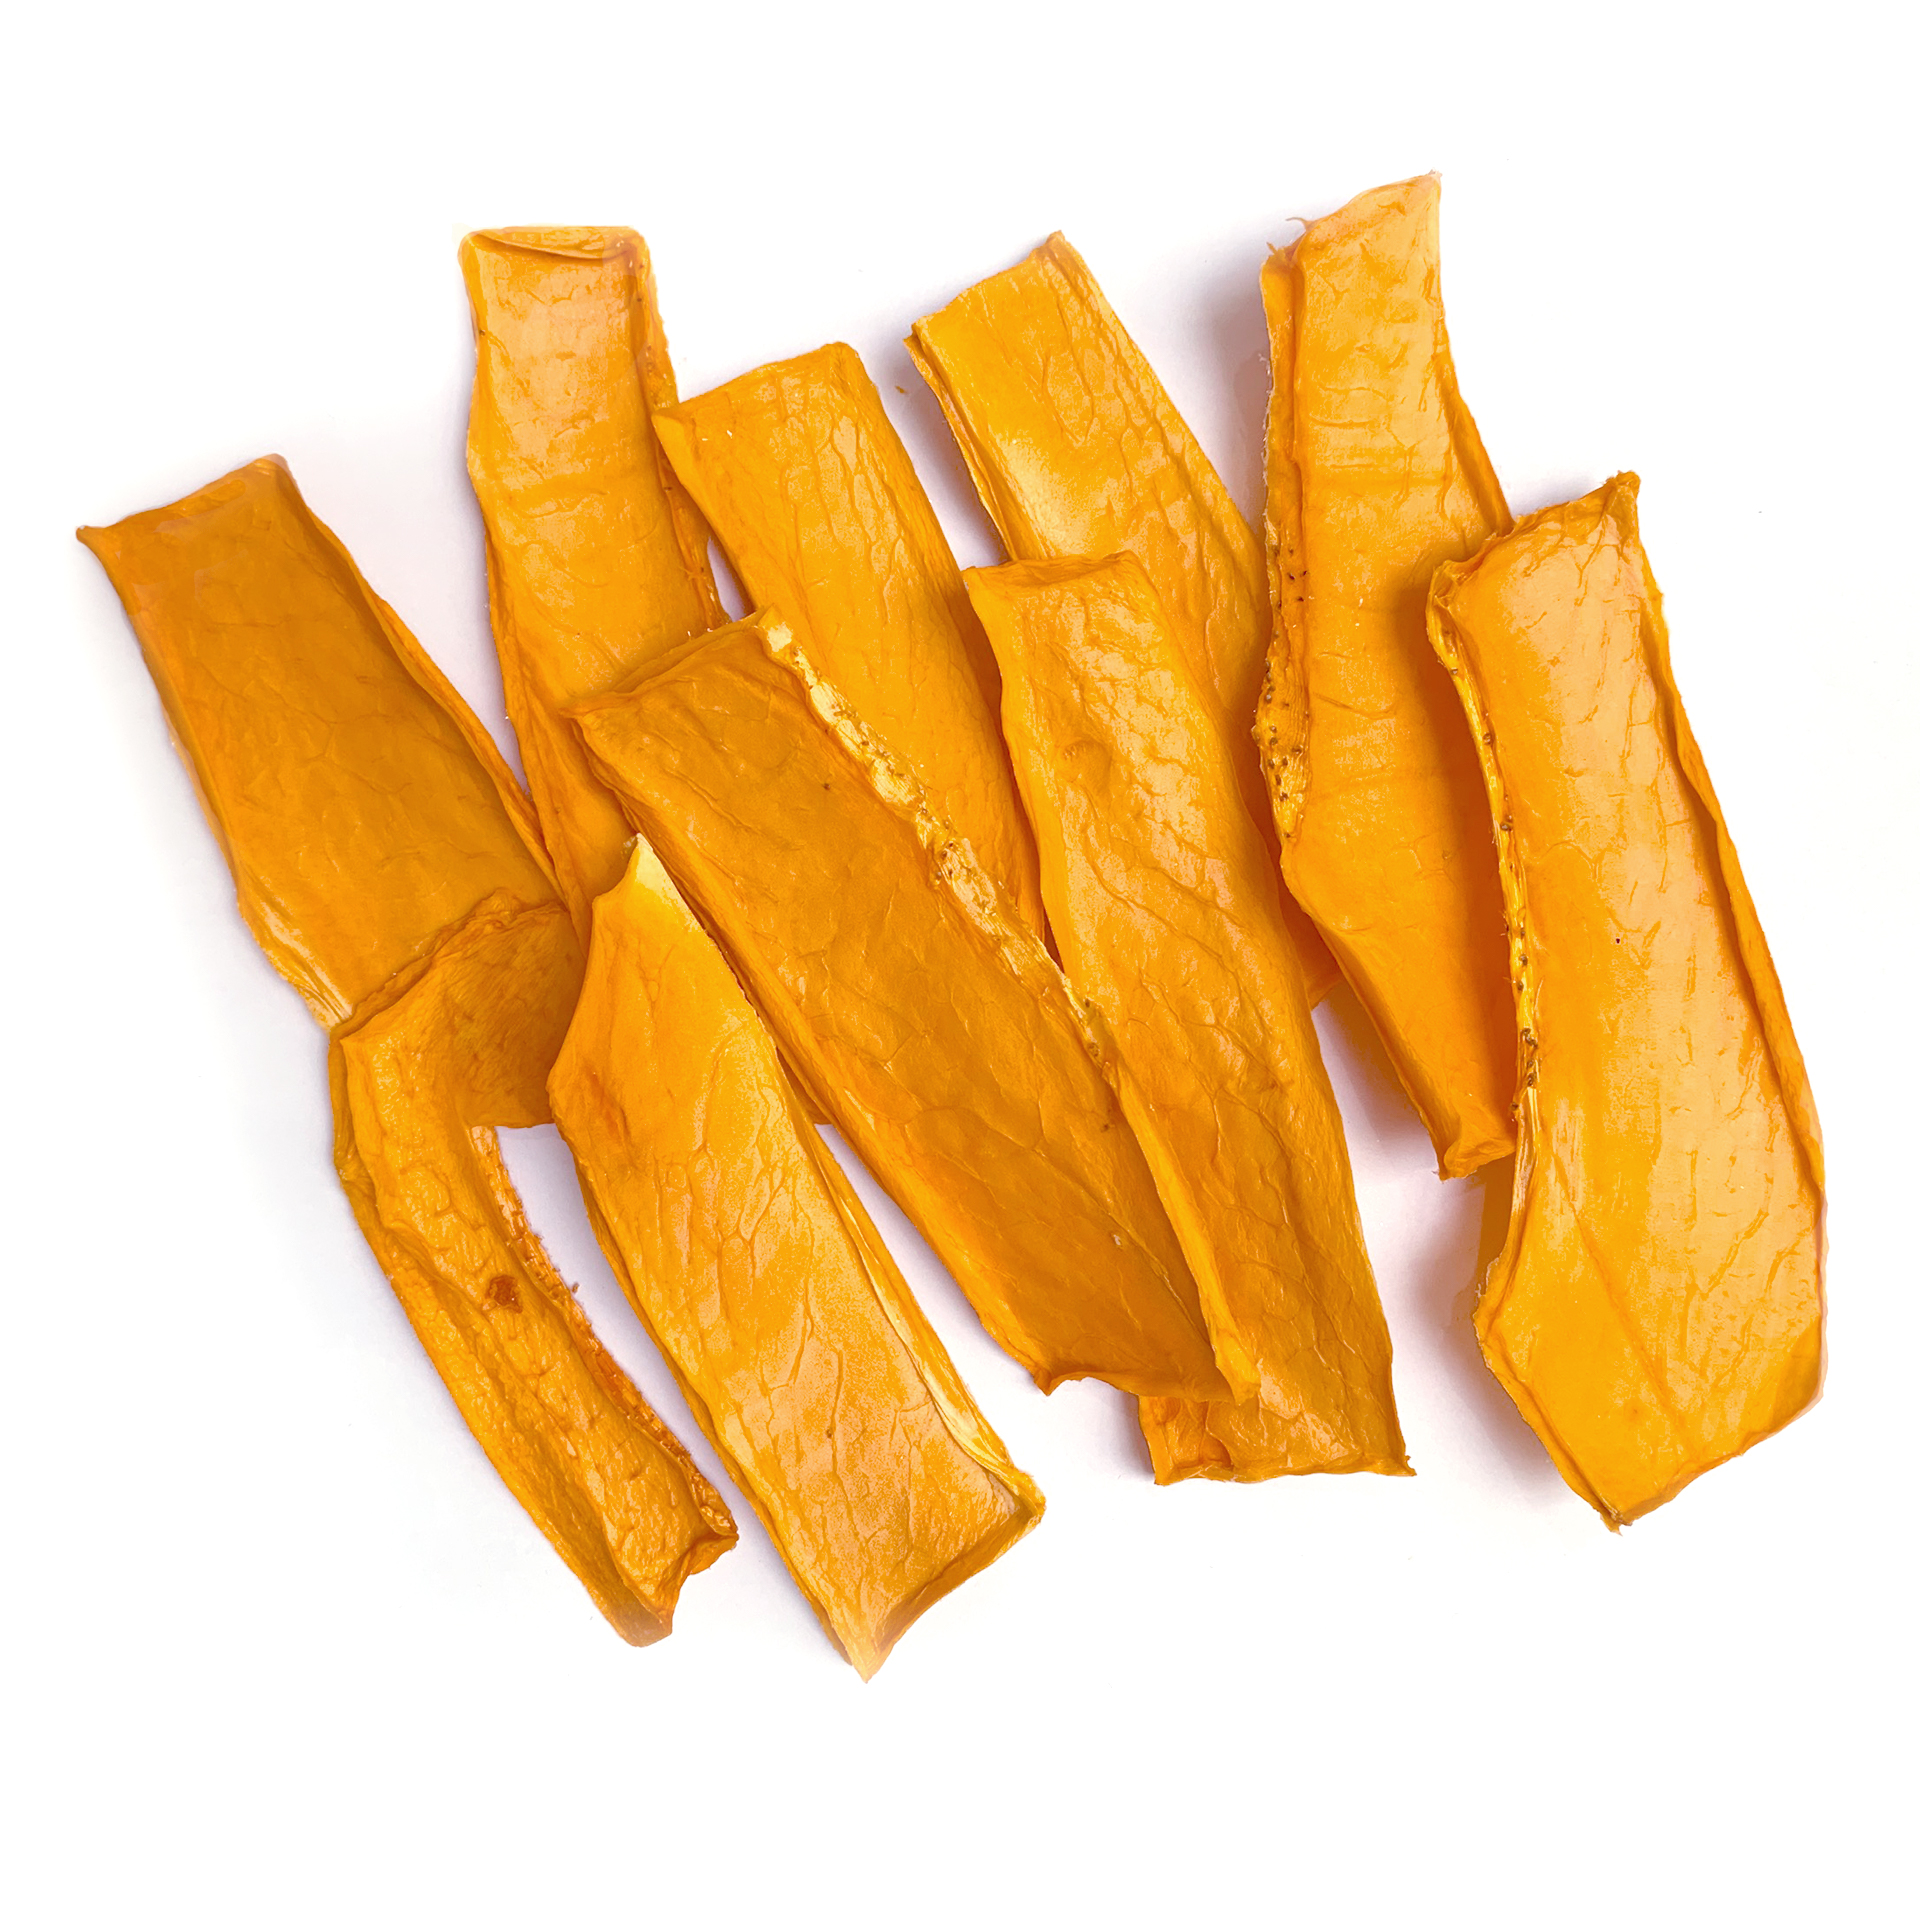 Natural dried papaya